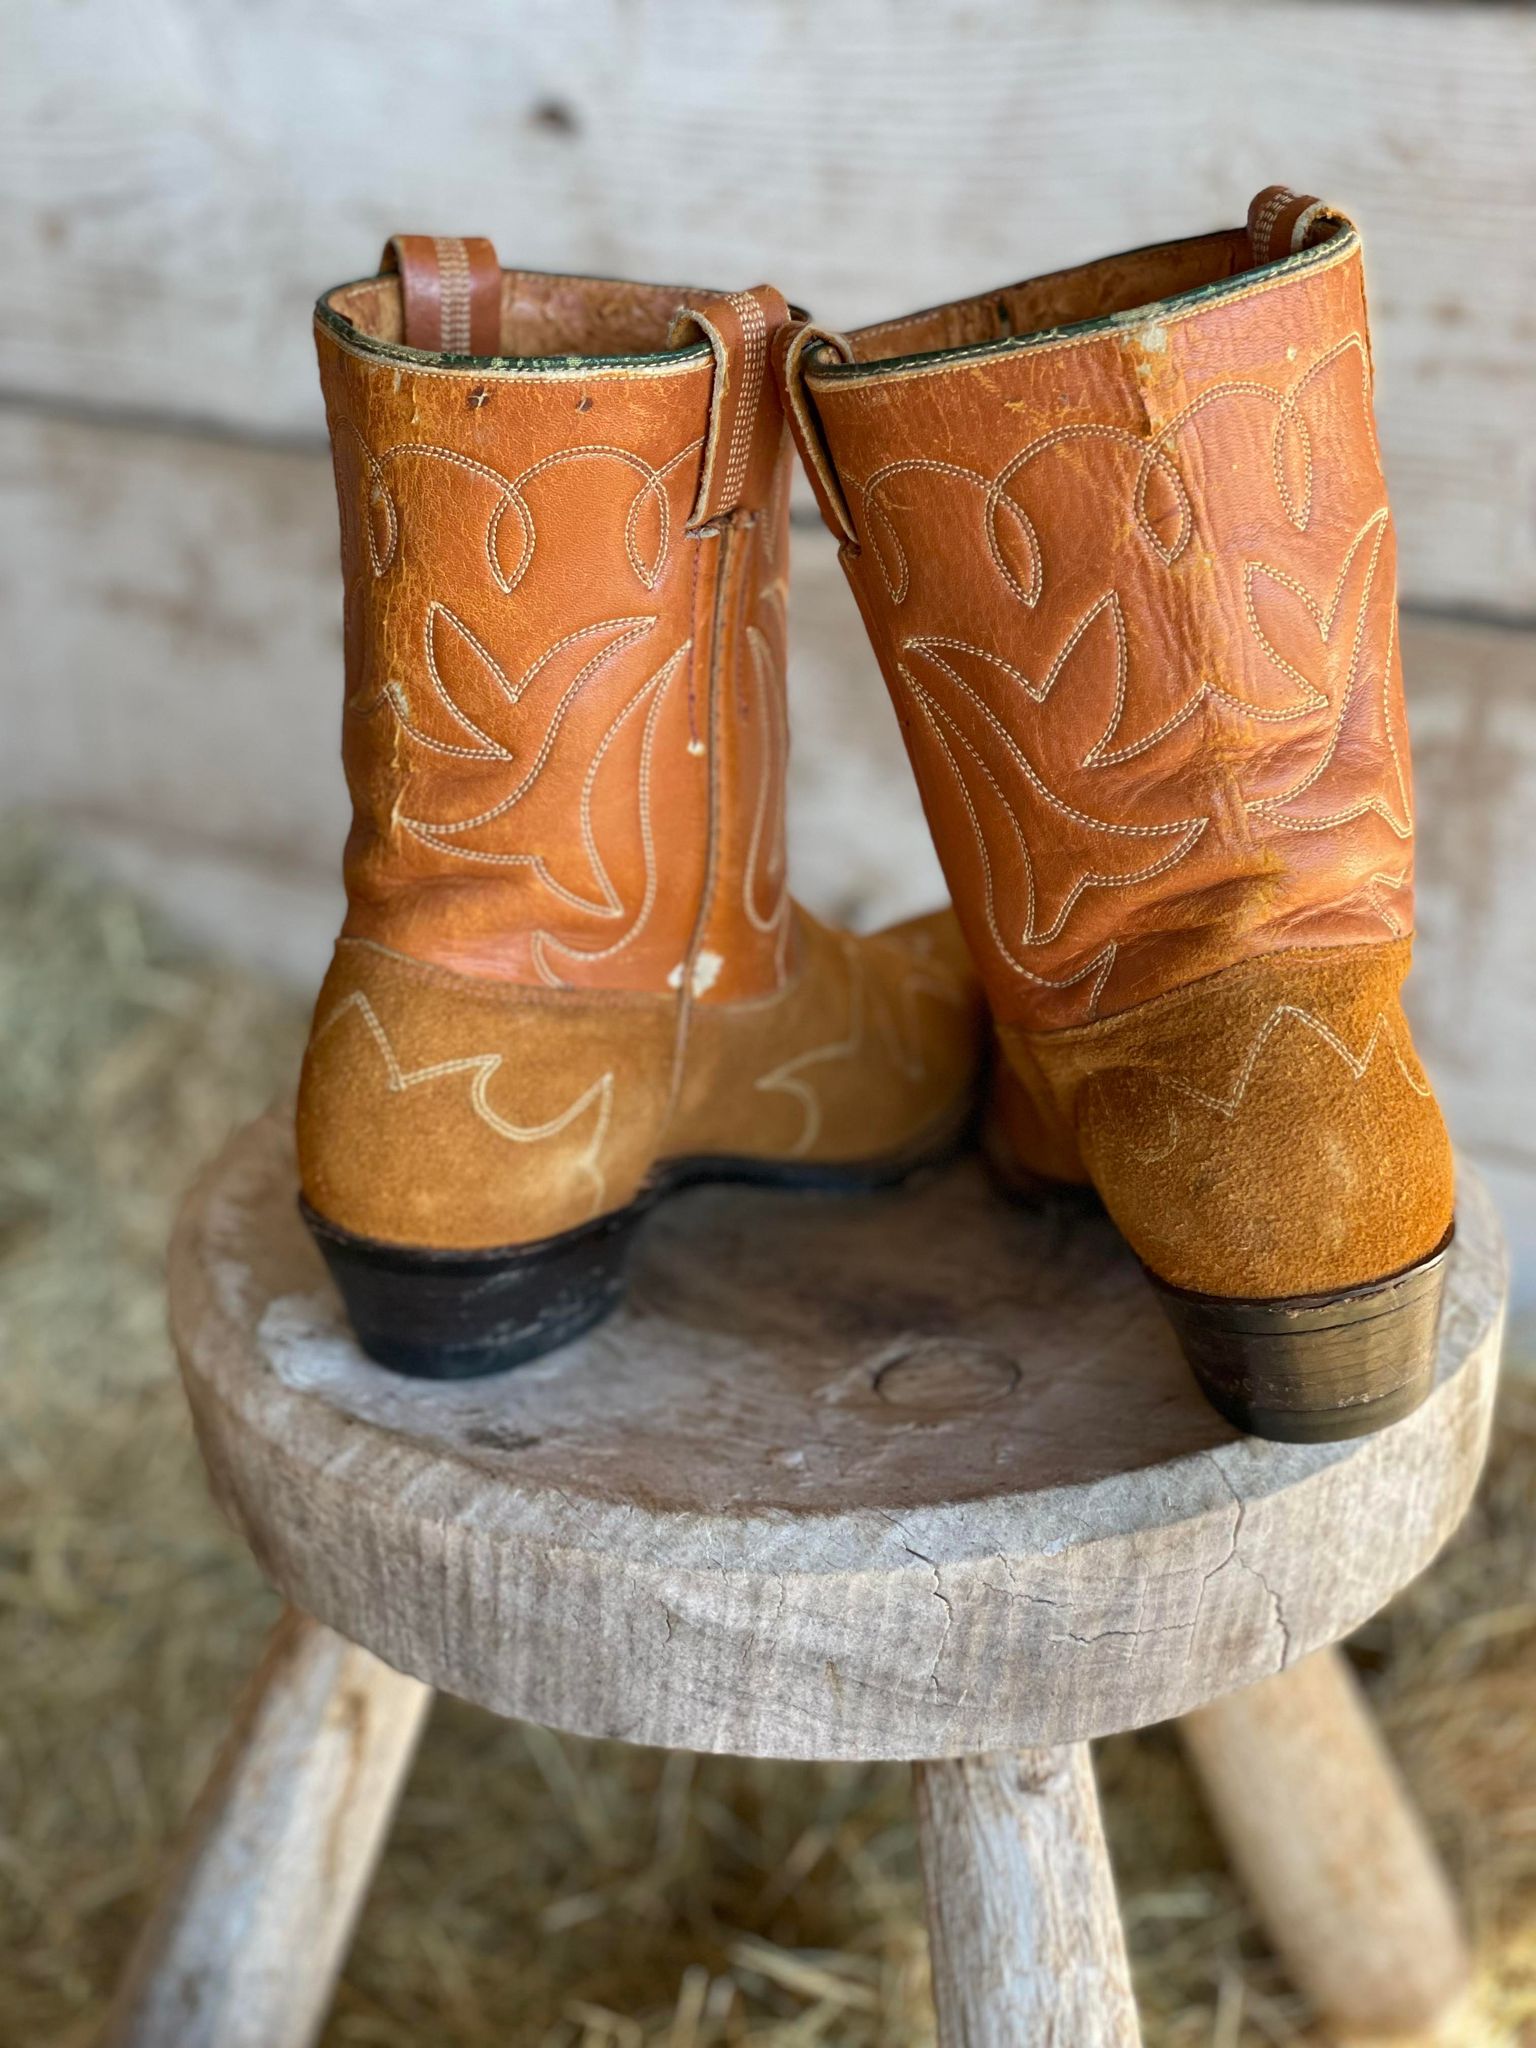 Vintage Rough Out Cowboy Boots (ladies 7D)